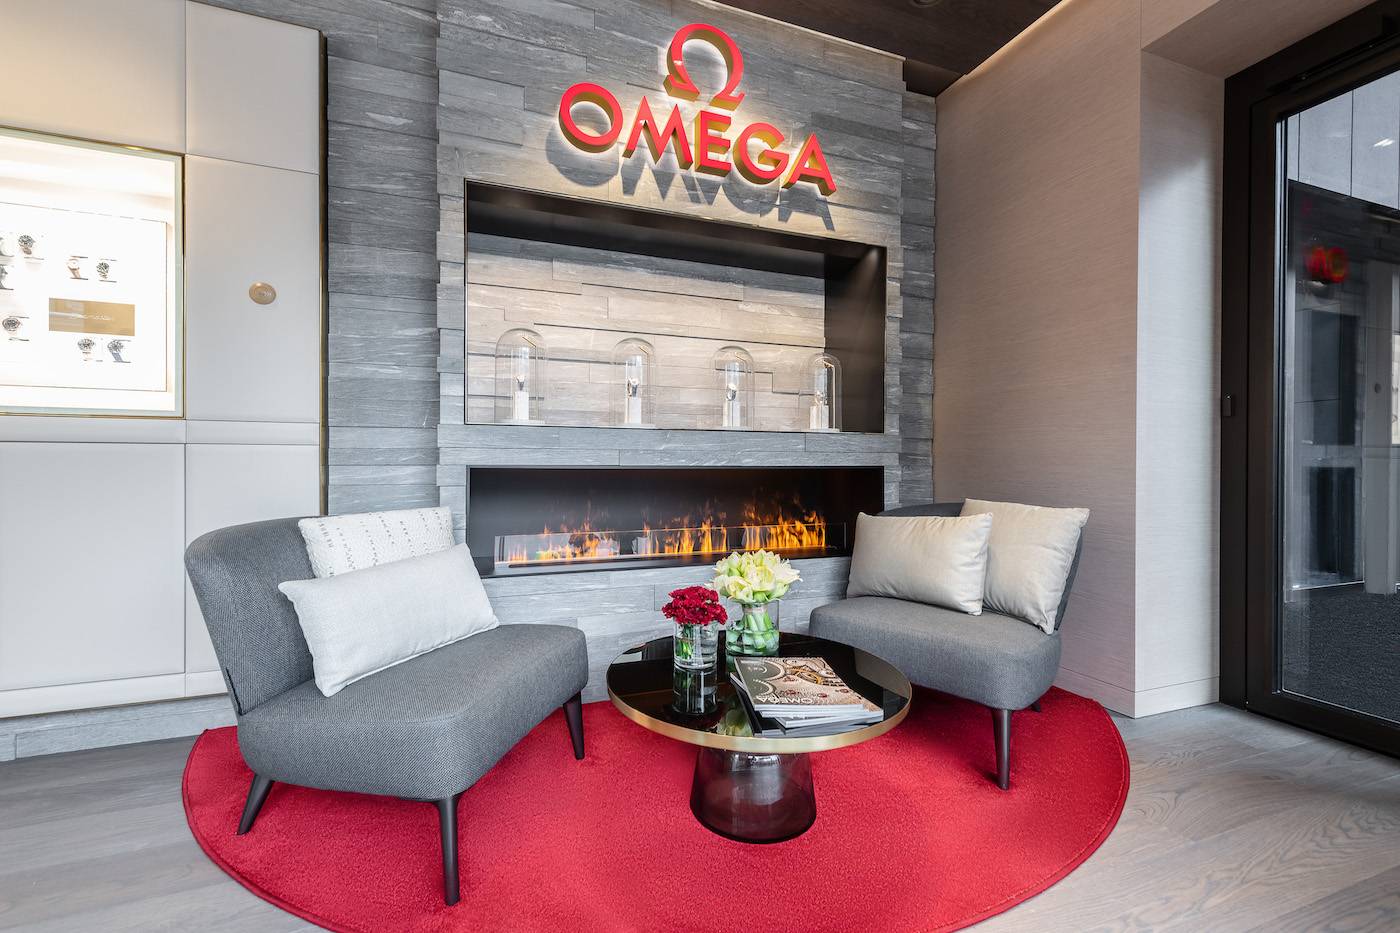 Omega abre una nueva boutique en St. Moritz